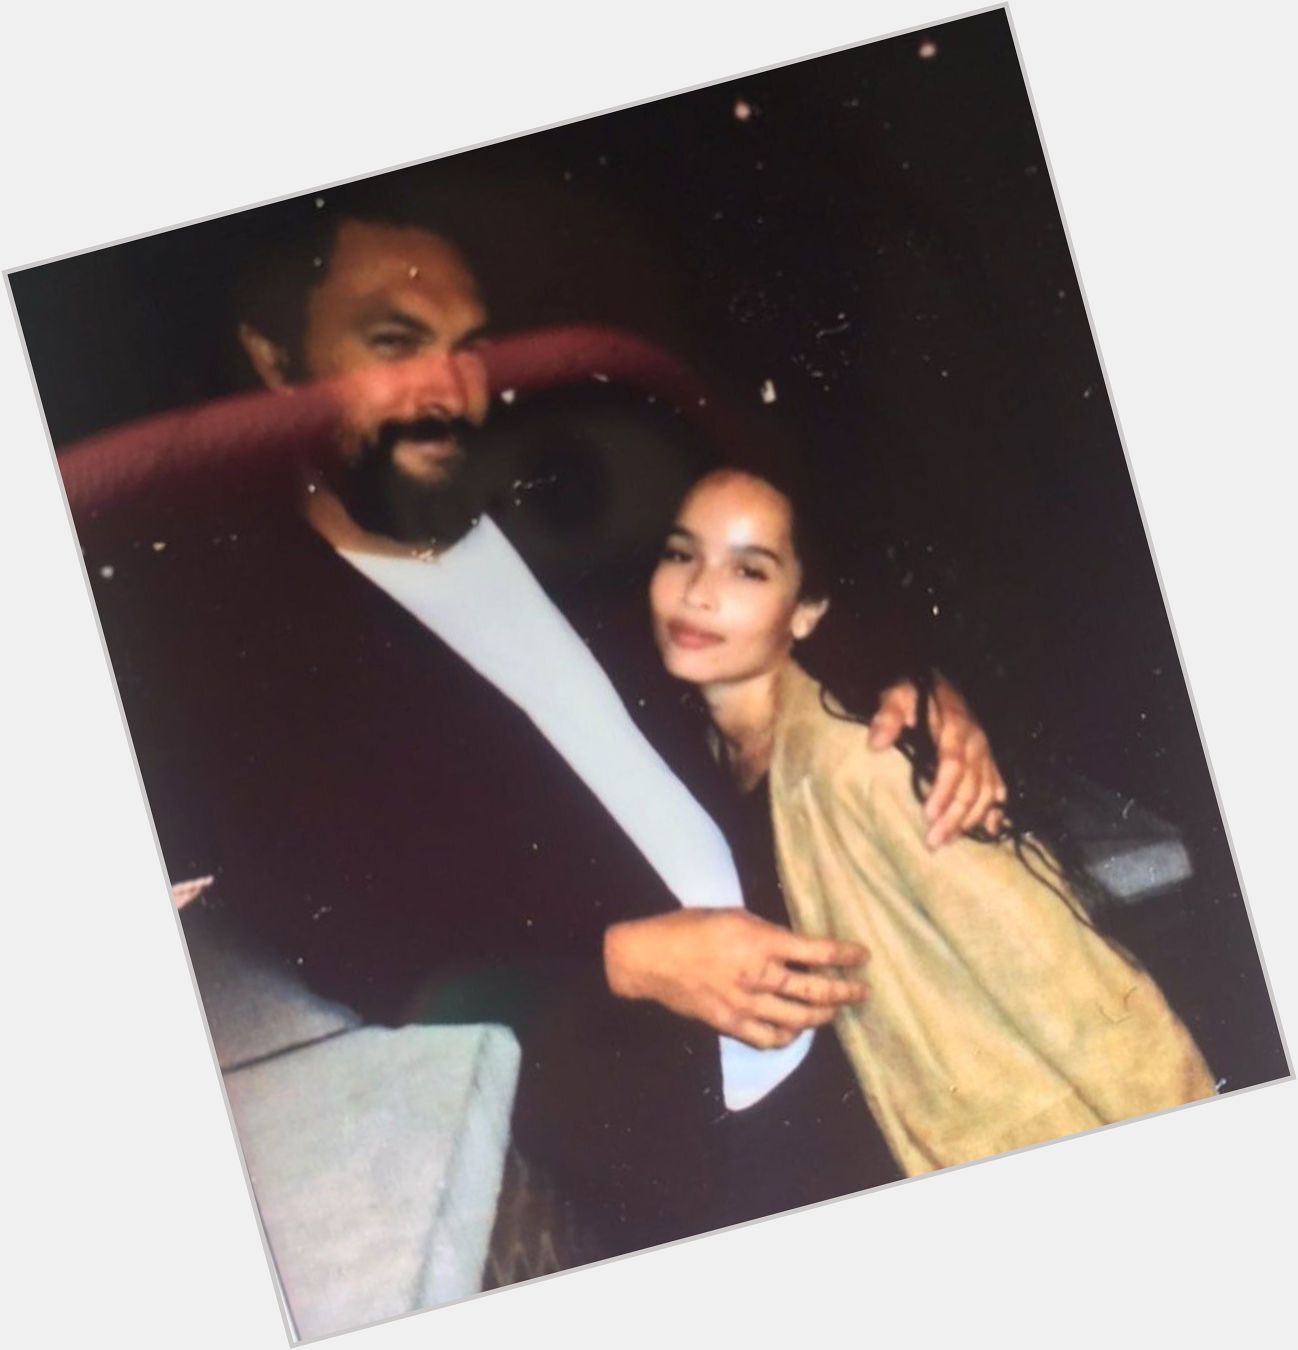 Zoë Kravitz and her dad Lenny Kravitz wish Jason Momoa a happy 41st birthday: \I love you\  